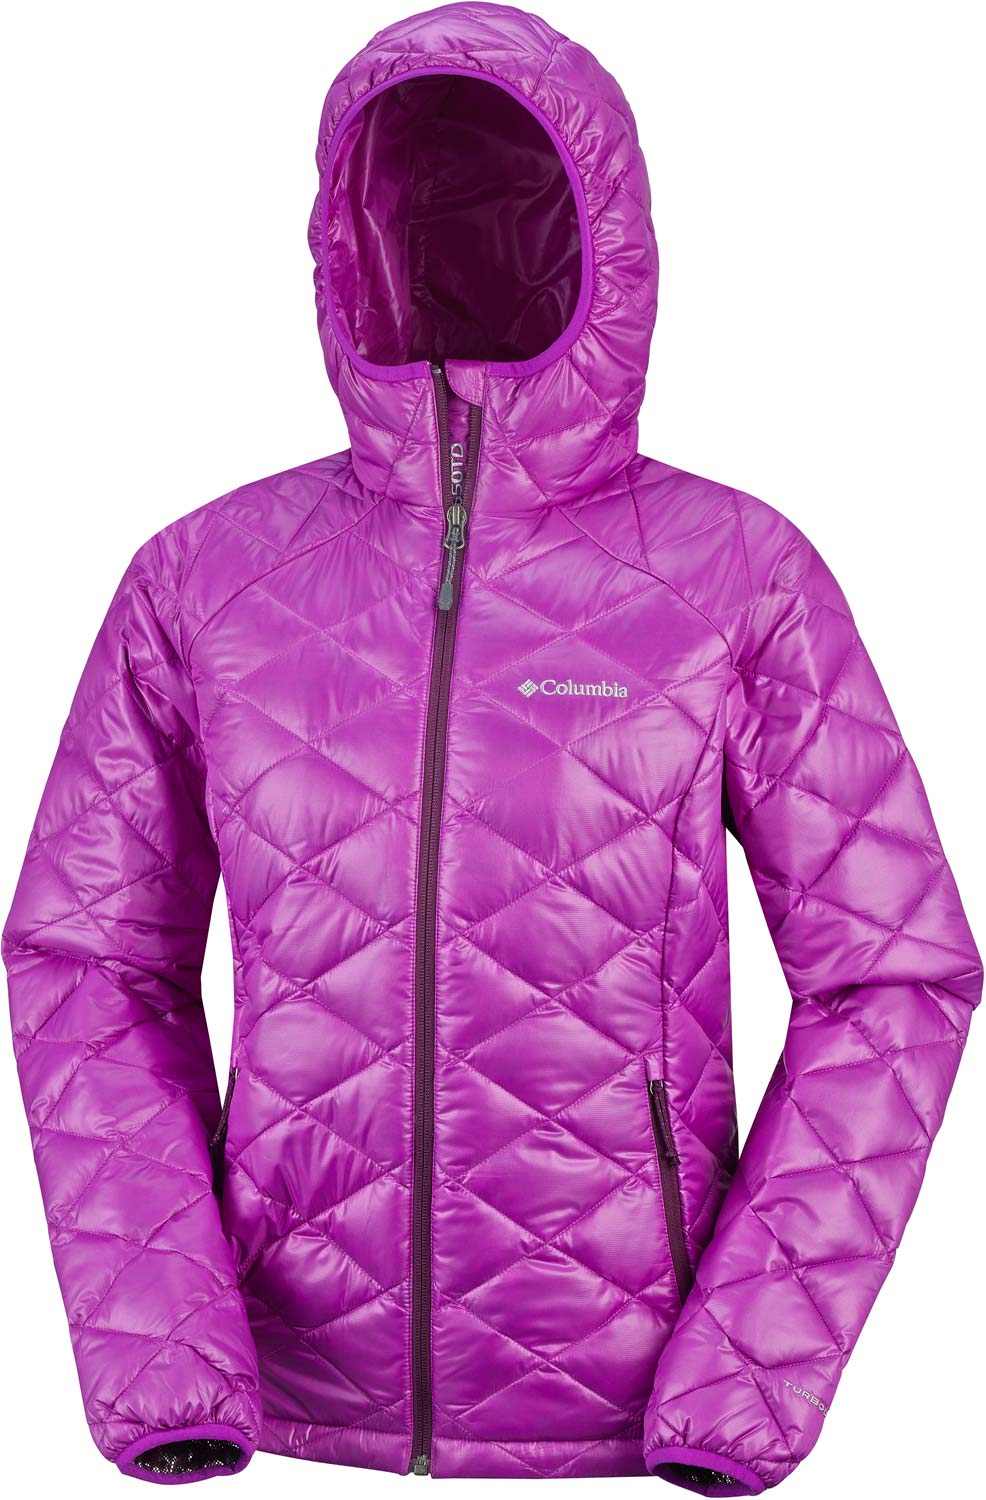 TRASK MOUNTAIN 650 TURBODOWN - Women's Winter Jacket